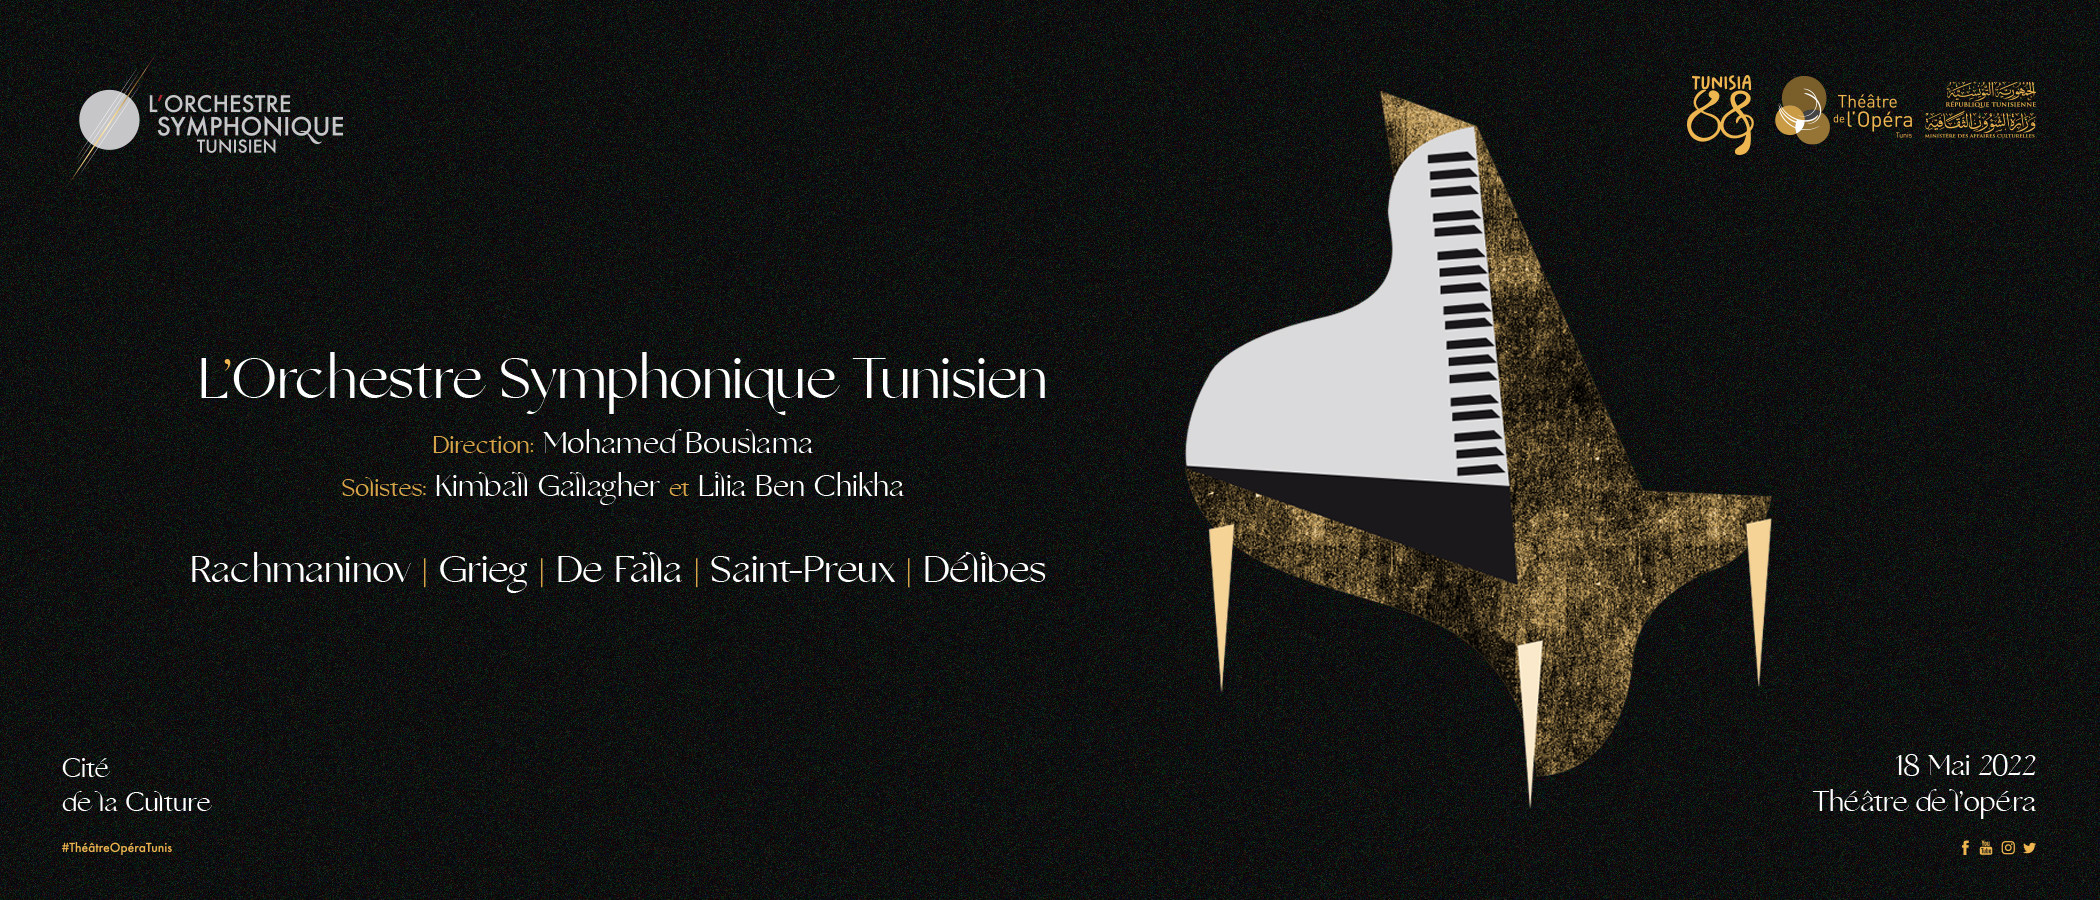 L’Orchestre Symphonique Tunisien